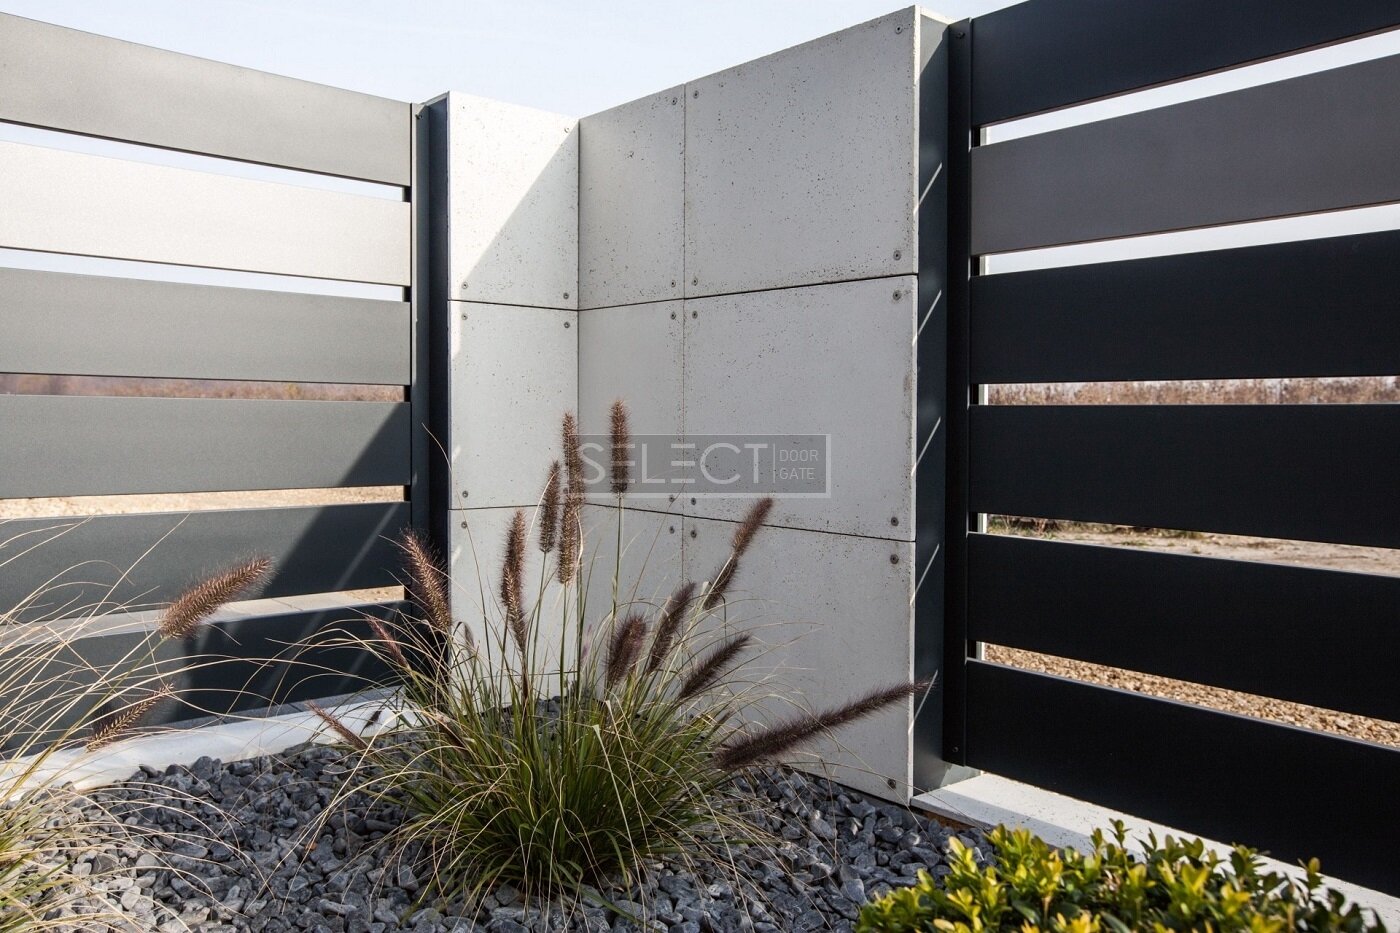 Красивый забор для частного дома - примеры фотографии изготовления от завода SELECT